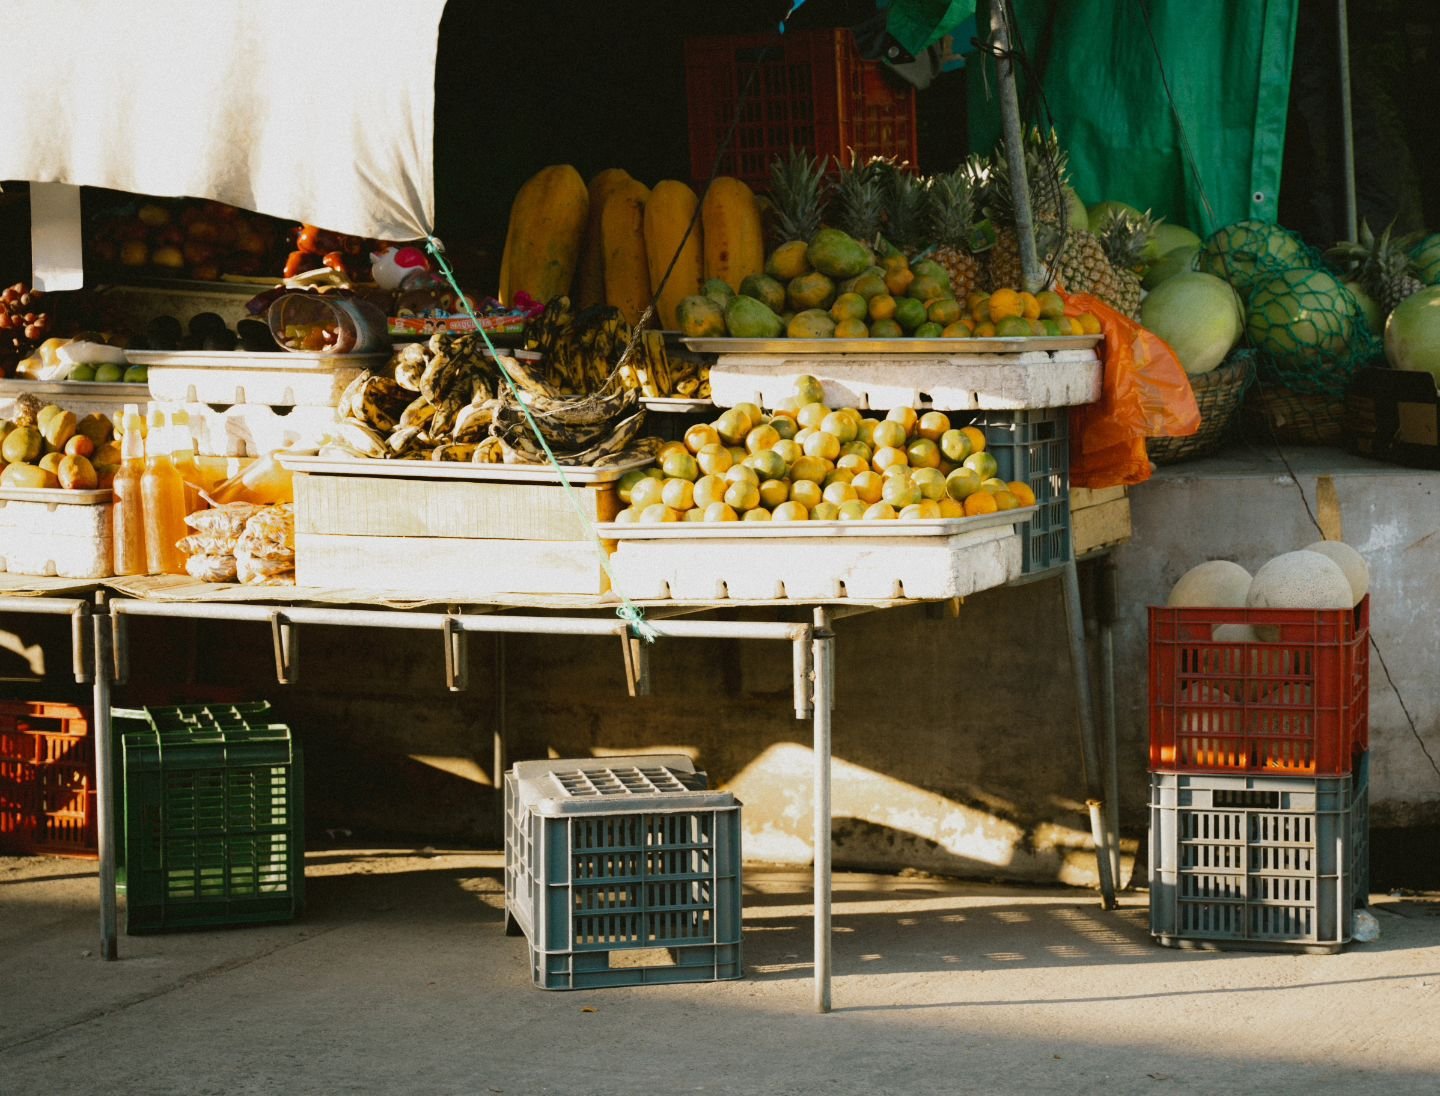 Ataco, El Salvador 🇸🇻 People and food.
Part 2.

&bull;
&bull;
&bull;
&bull;
&bull;

#travelphotostory #travelphotography #travelphotographer #atacoelsalvador #elsalvador🇸🇻 #elsalvadortravel #travelmagazine #pueblitossalvadore&ntilde;os #foodphoto